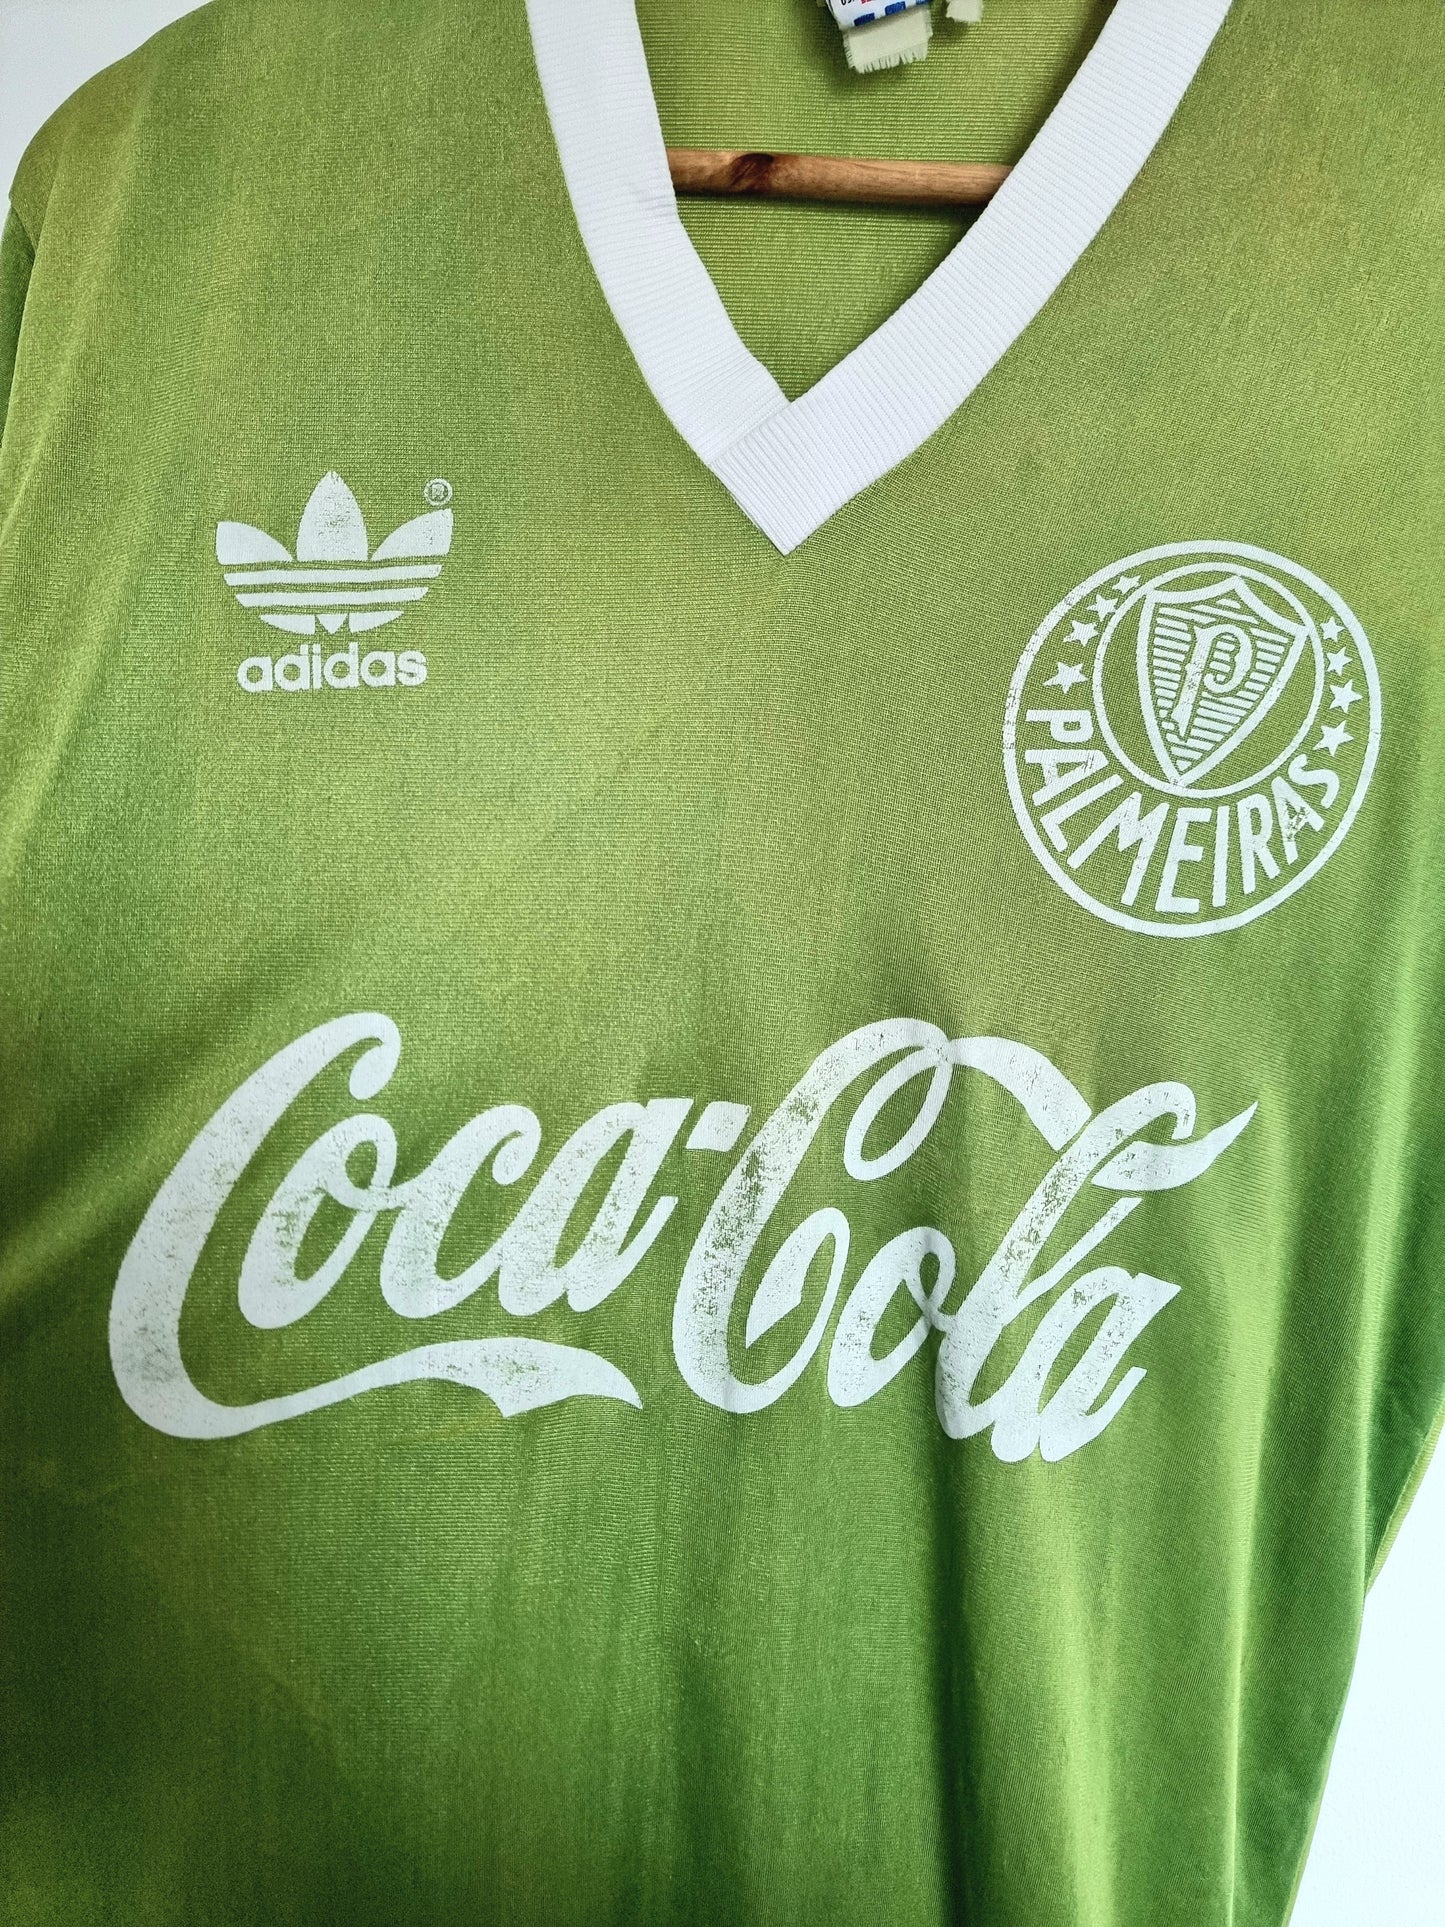 Adidas Palmeiras 89/91 Home Shirt Medium